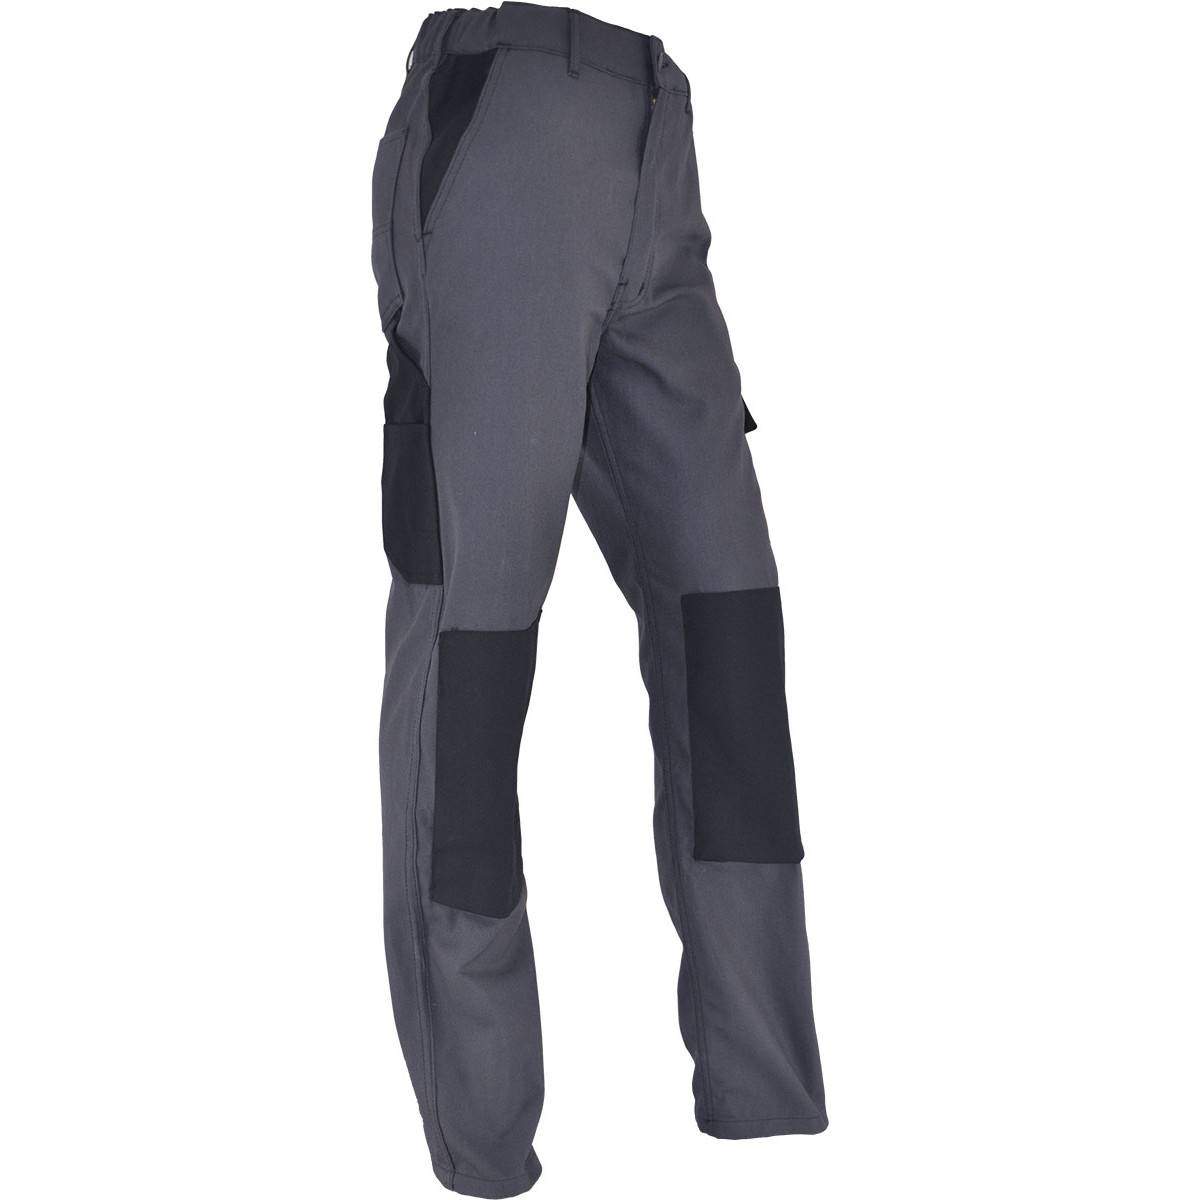 Pantalon de travail confort taille 38, gris Anthracite, poches multiples, genouillères chantiers incluses